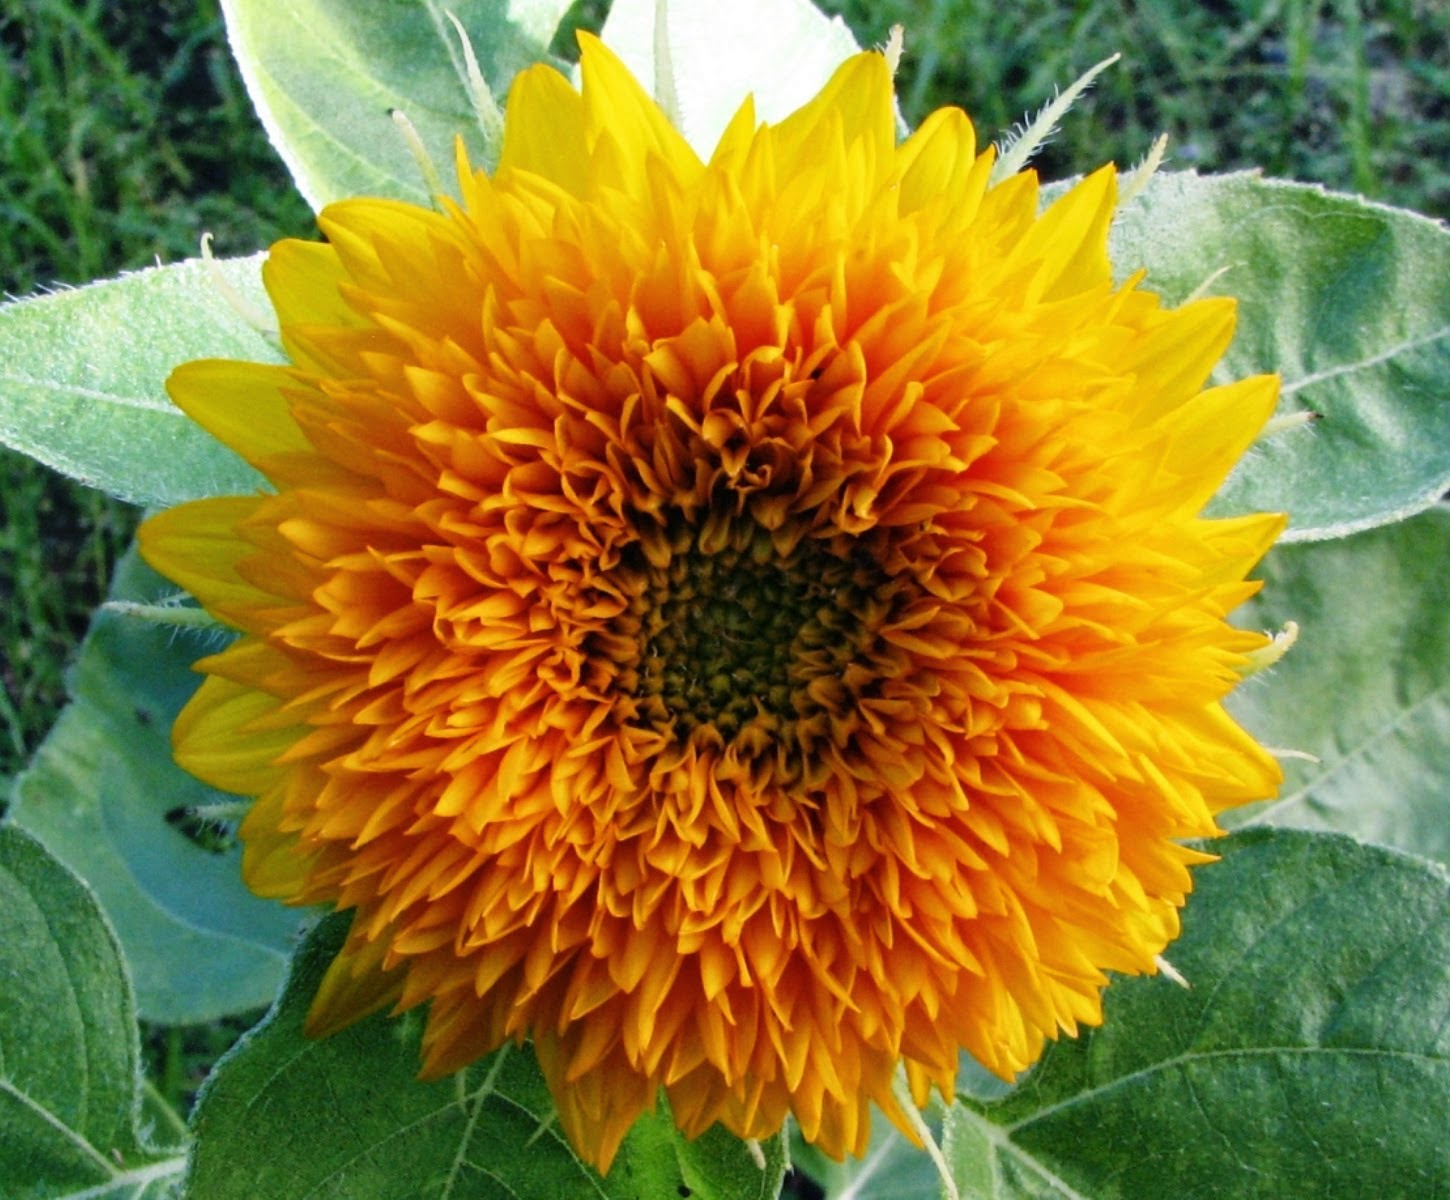 Macam dan Jenis Bunga Matahari | Manfaat di dalam ...